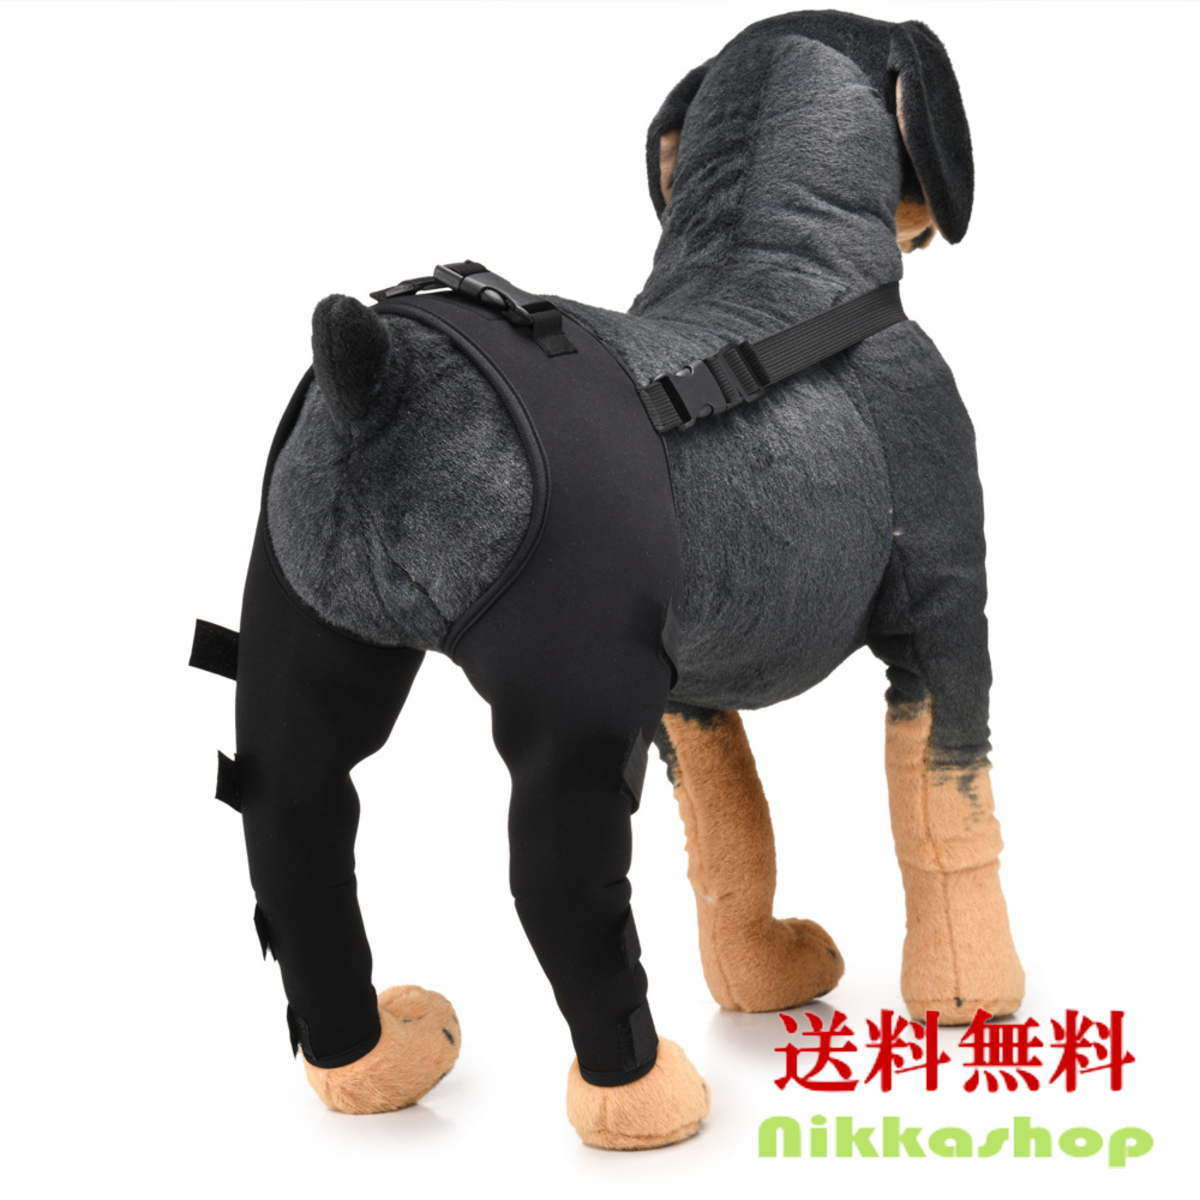 市場 ポイント10倍 保護 プロテクター 介護 サポート 靭帯 脱臼 足プロテクター ペット 犬 犬用 膝 関節 サポーター